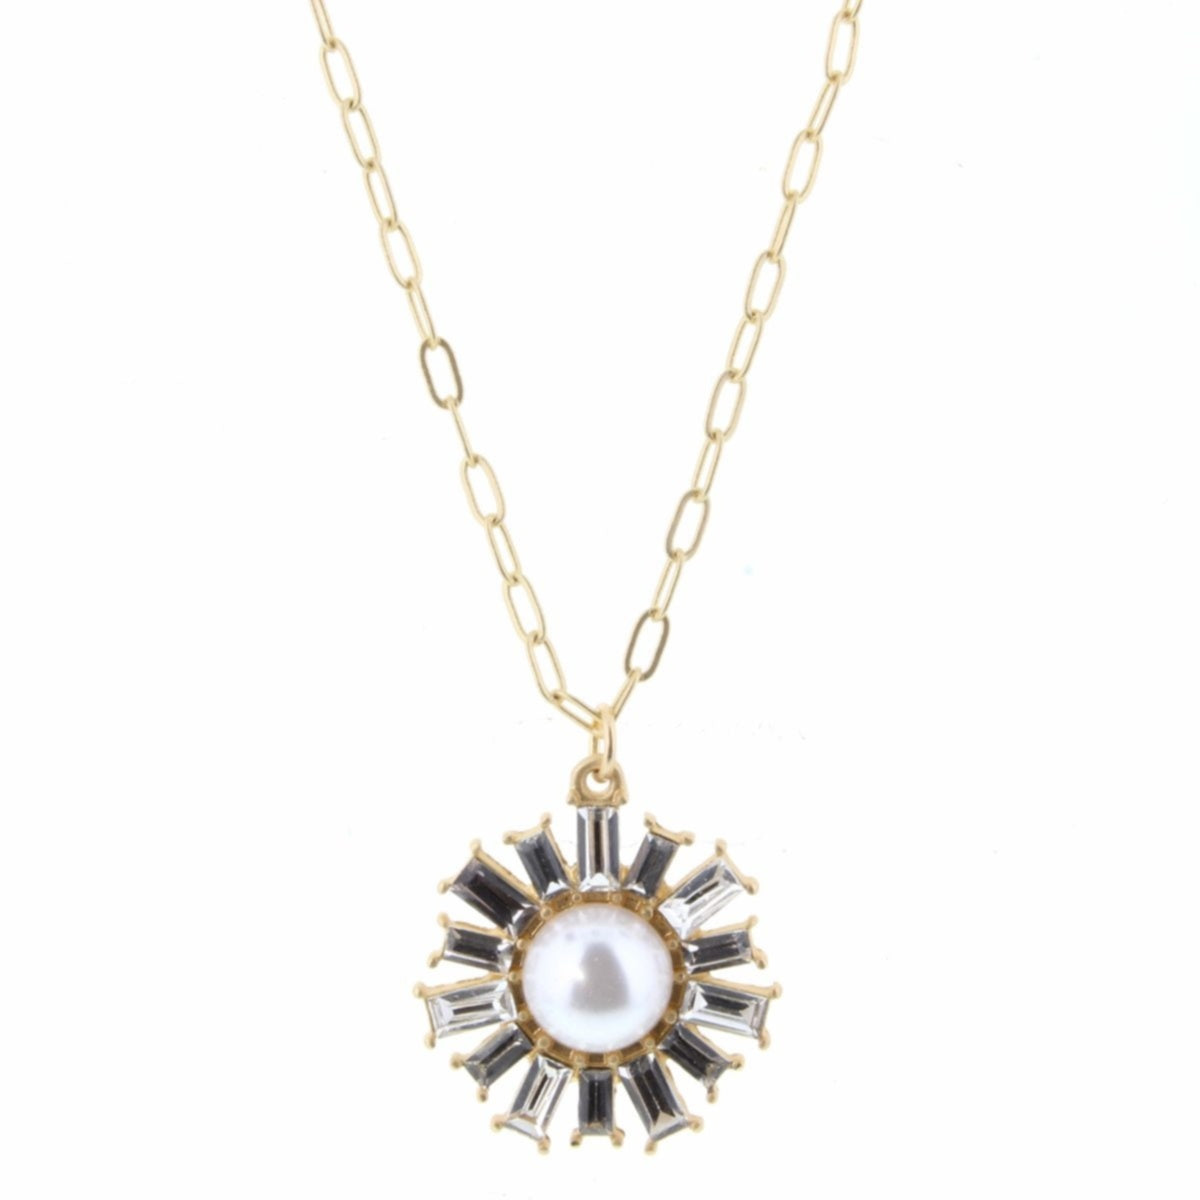 Collar ajustable con cadena de oro de 18-24" con perla y piedra checa transparente 